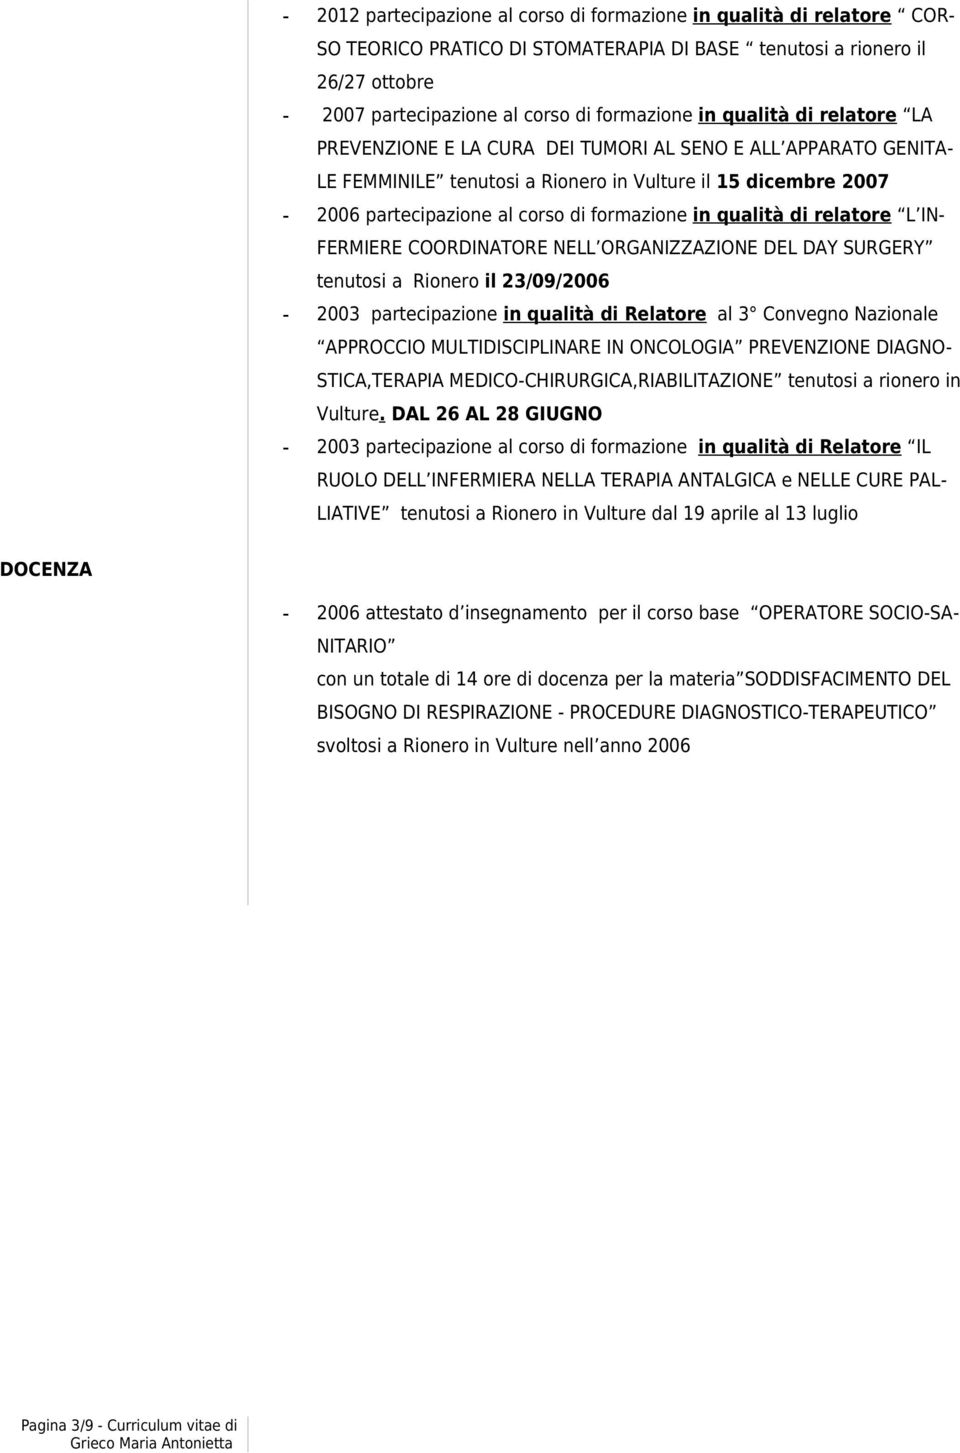 qualità di relatore L IN- FERMIERE COORDINATORE NELL ORGANIZZAZIONE DEL DAY SURGERY tenutosi a Rionero il 23/09/2006-2003 partecipazione in qualità di Relatore al 3 Convegno Nazionale APPROCCIO